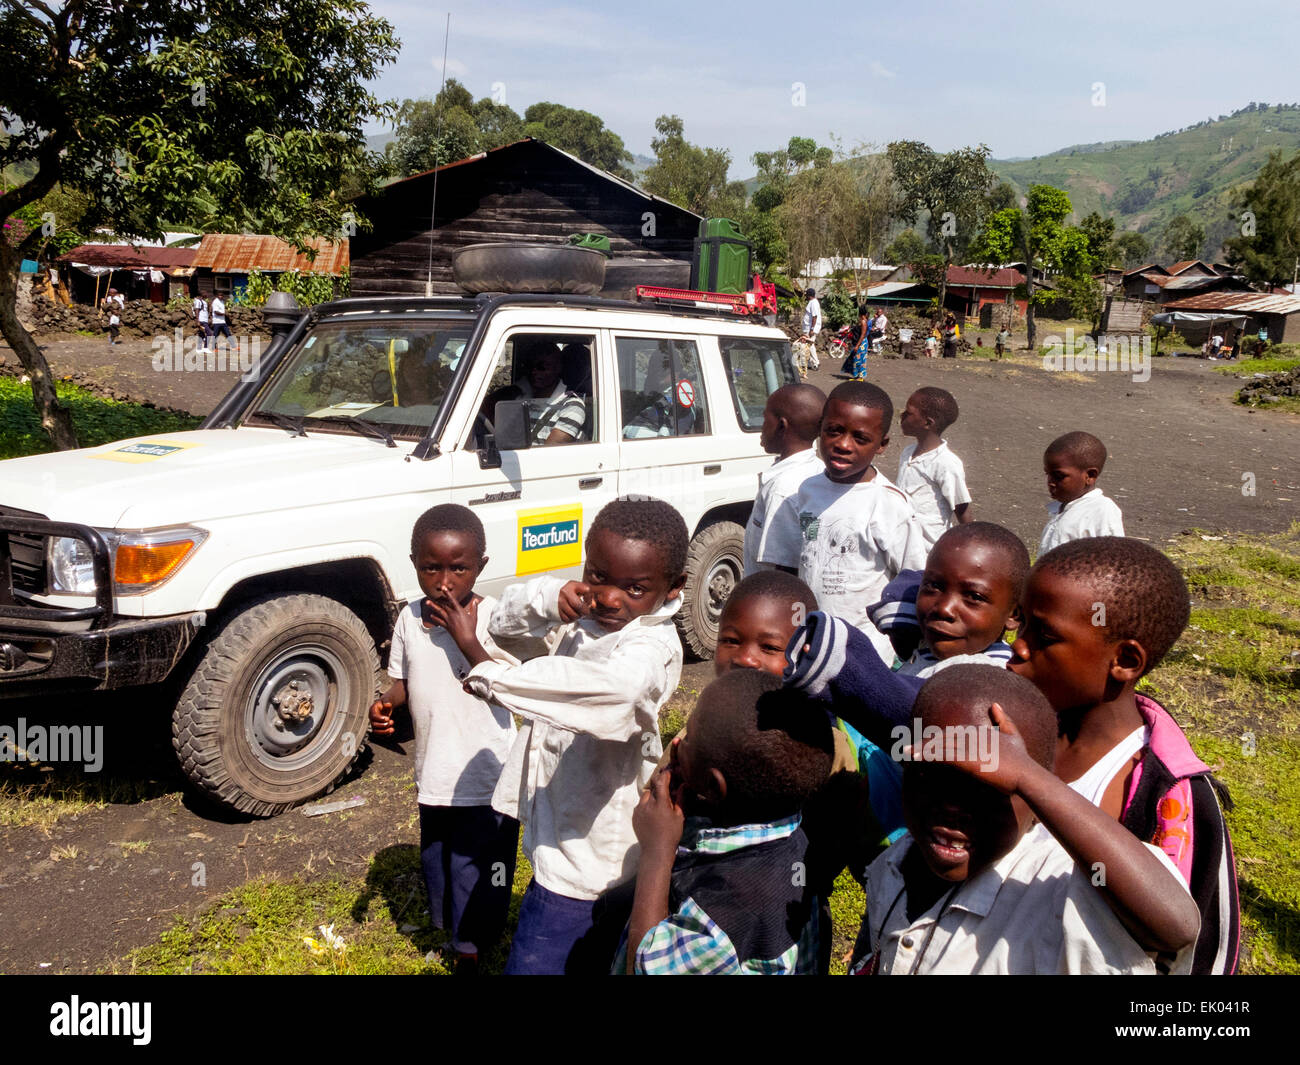 Les enfants africains congolais devant un organisme de bienfaisance de Tearfund jeep, la ville de Goma, République démocratique du Congo ( RDC ), l'Afrique Banque D'Images